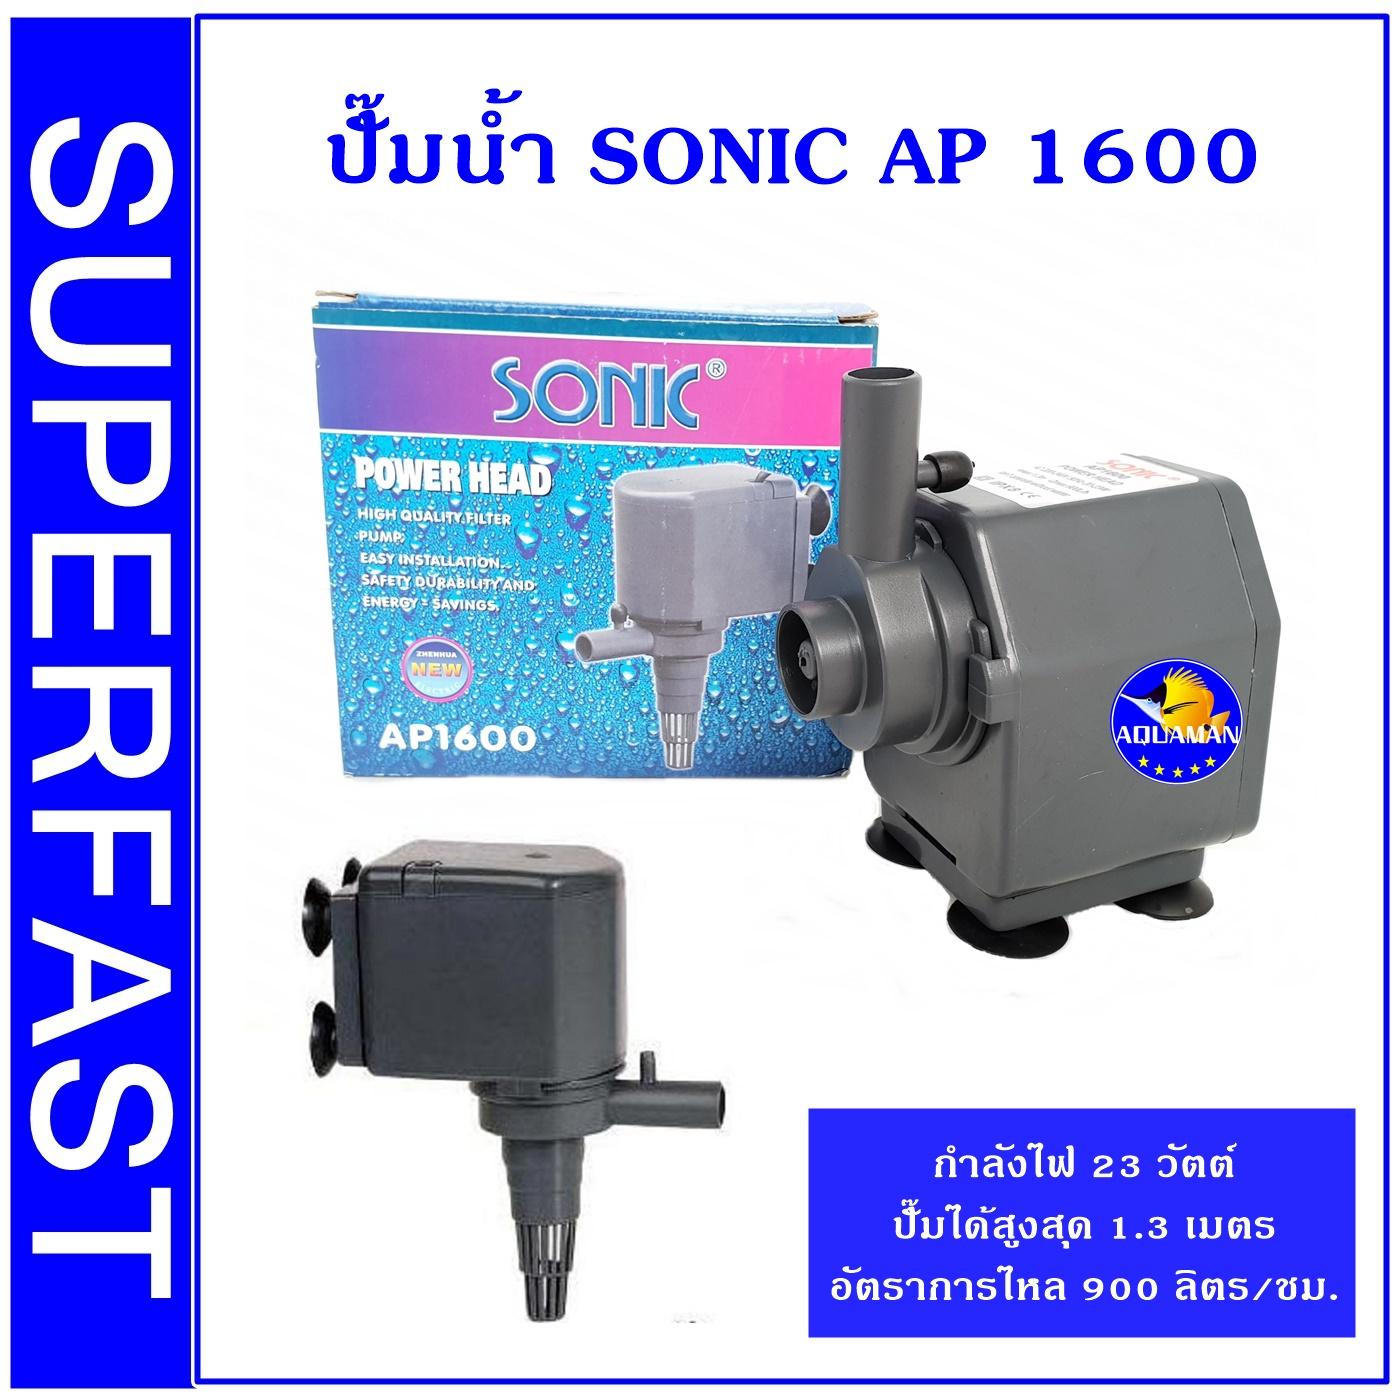 ปั้มน้ำ ปั้มแช่ ปั๊มน้ำพุ Sonic AP 1600